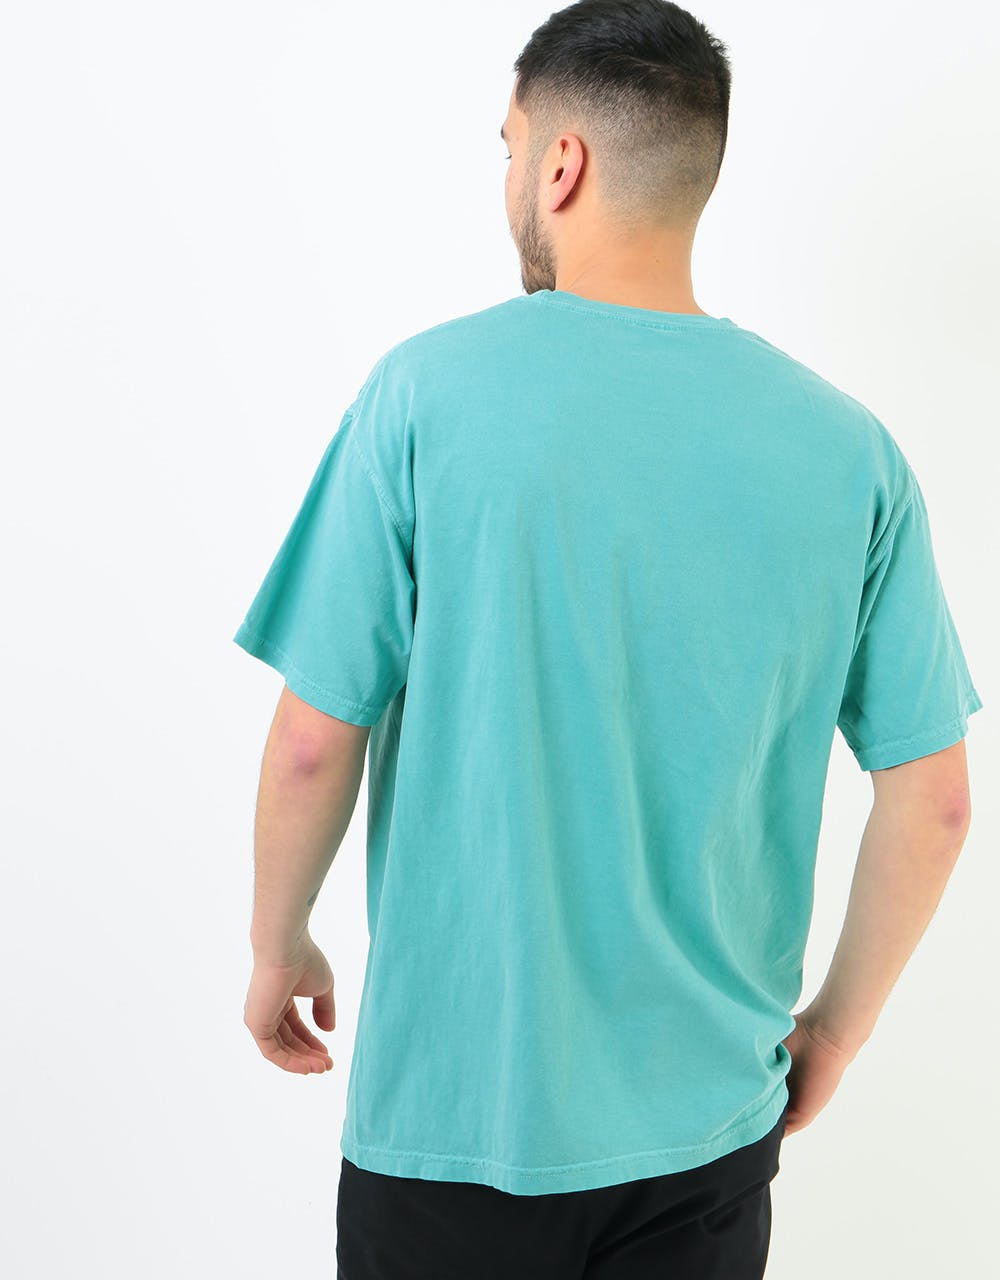 Diamond OG Script Overdye T-Shirt - Turquoise